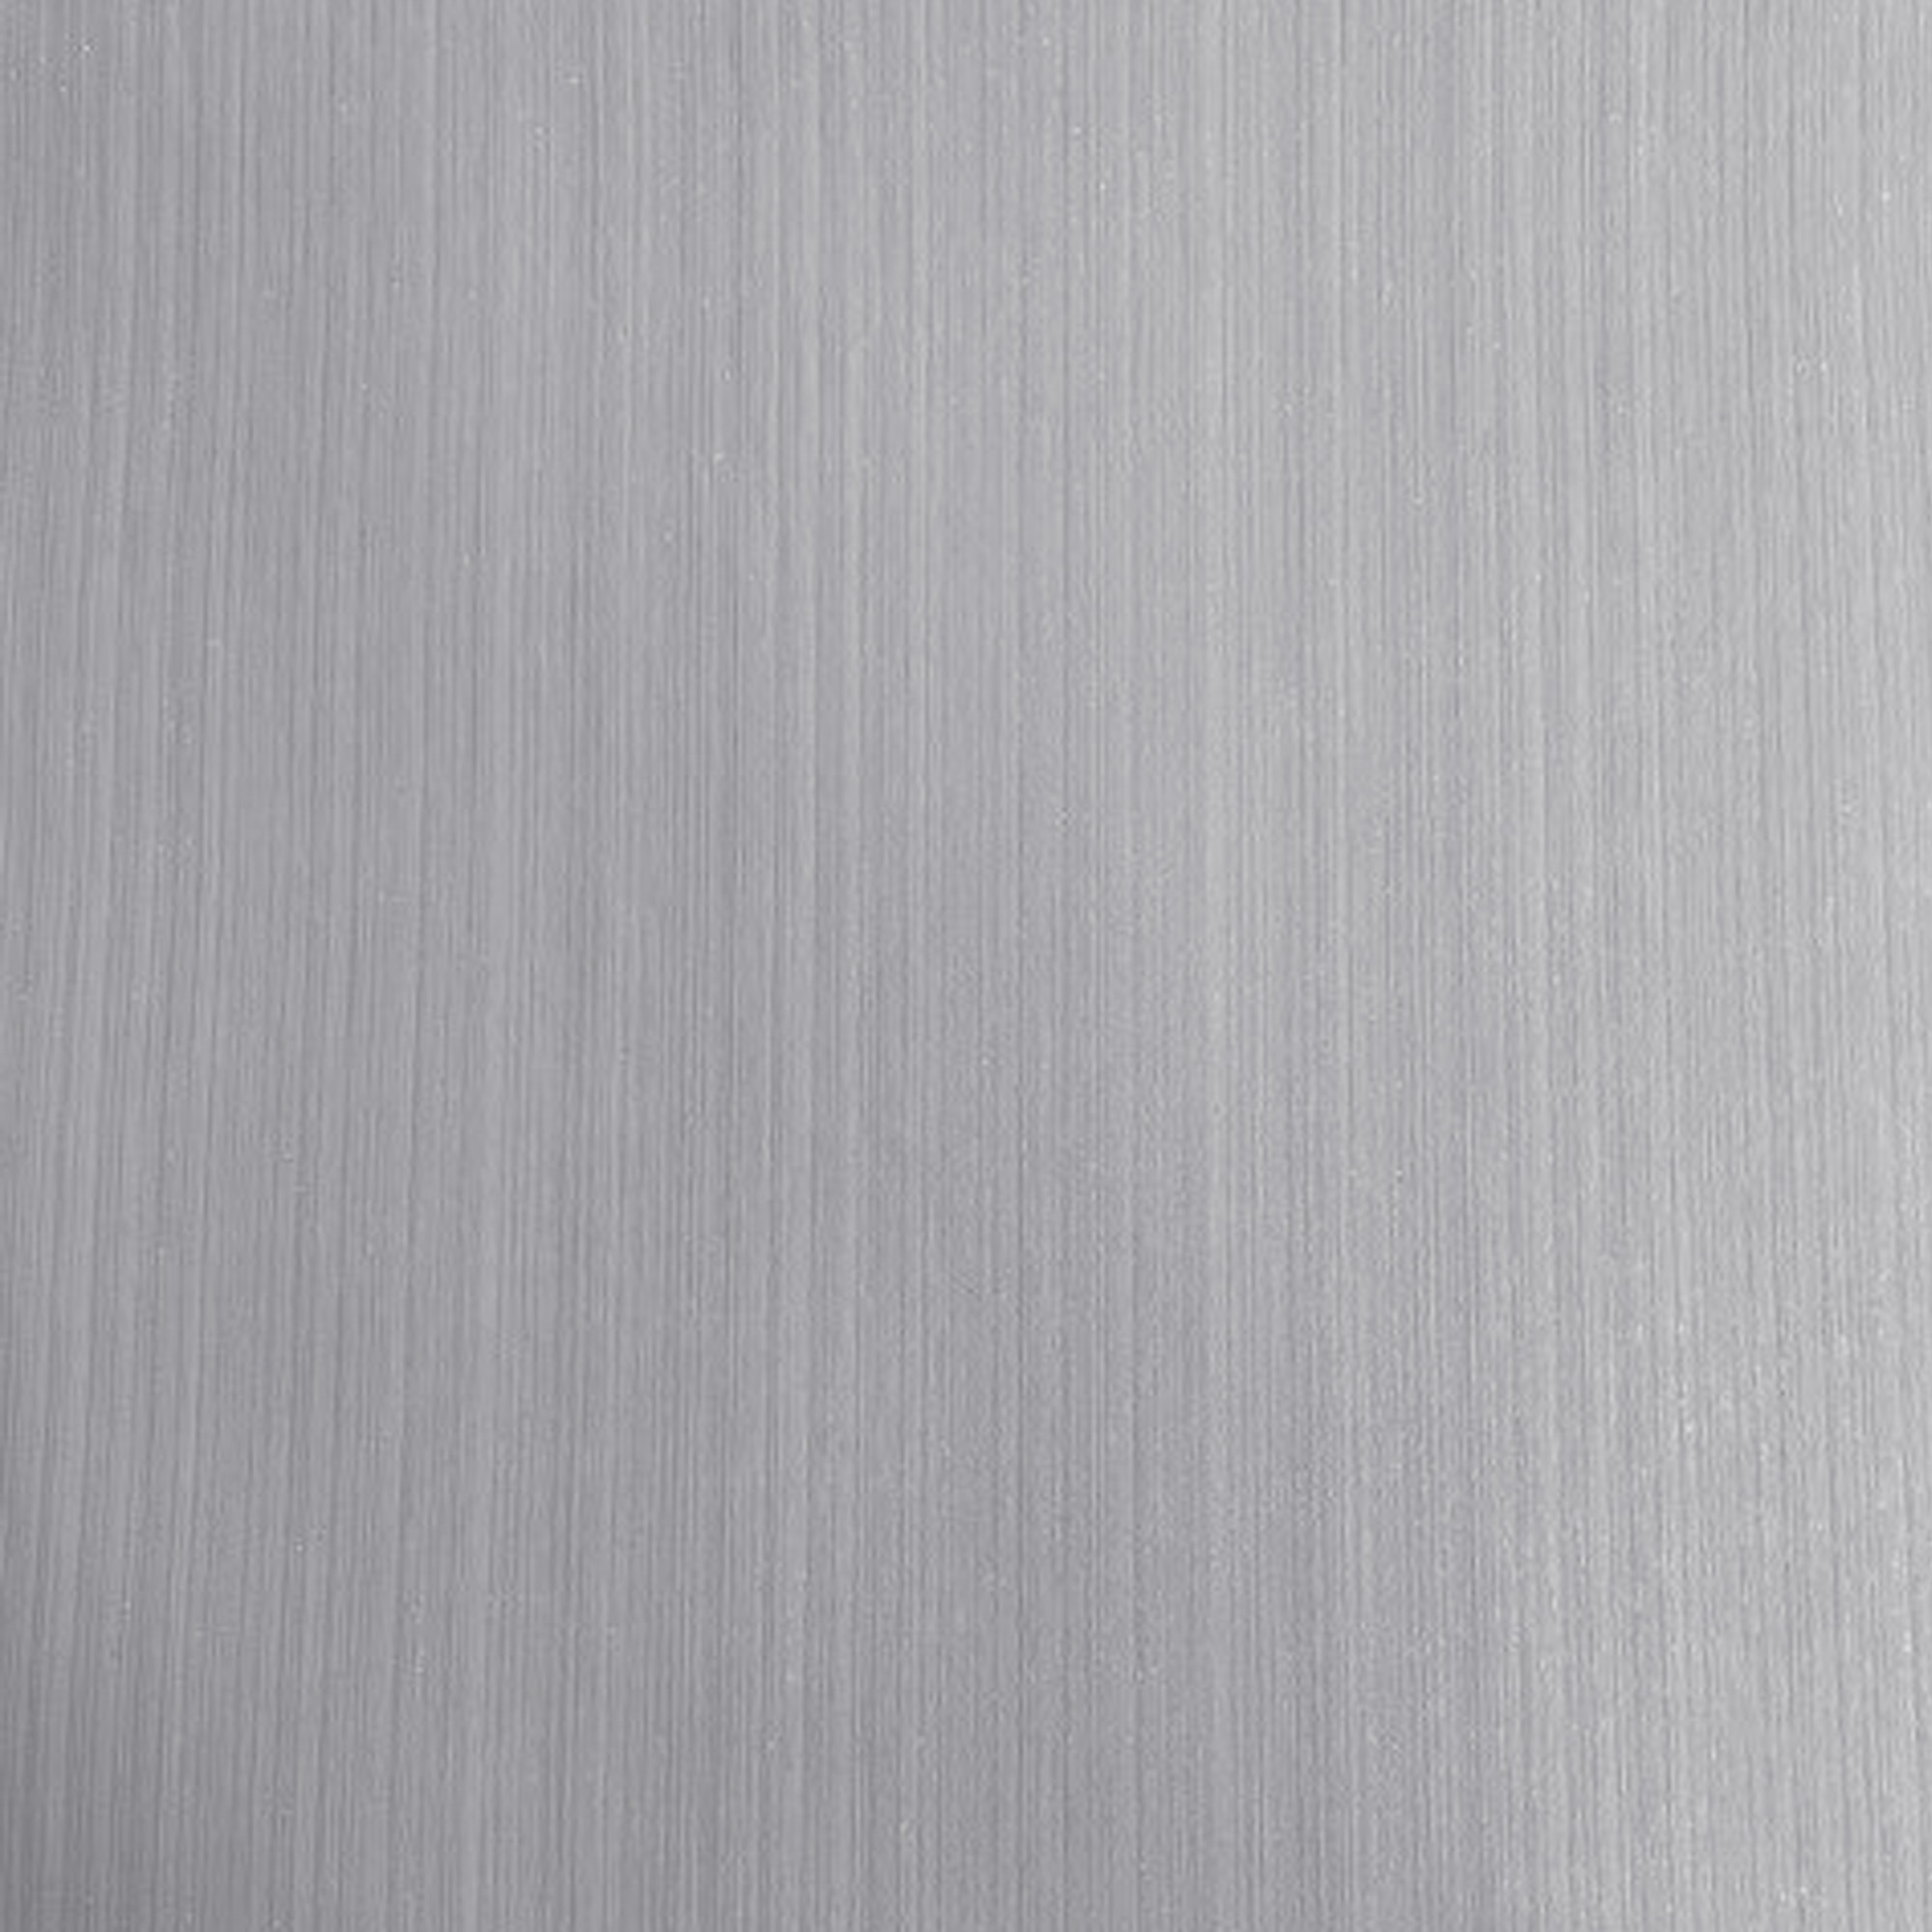 Superfresco Easy Glitter Stria Mauve Wallpaper - 10m x 52cm